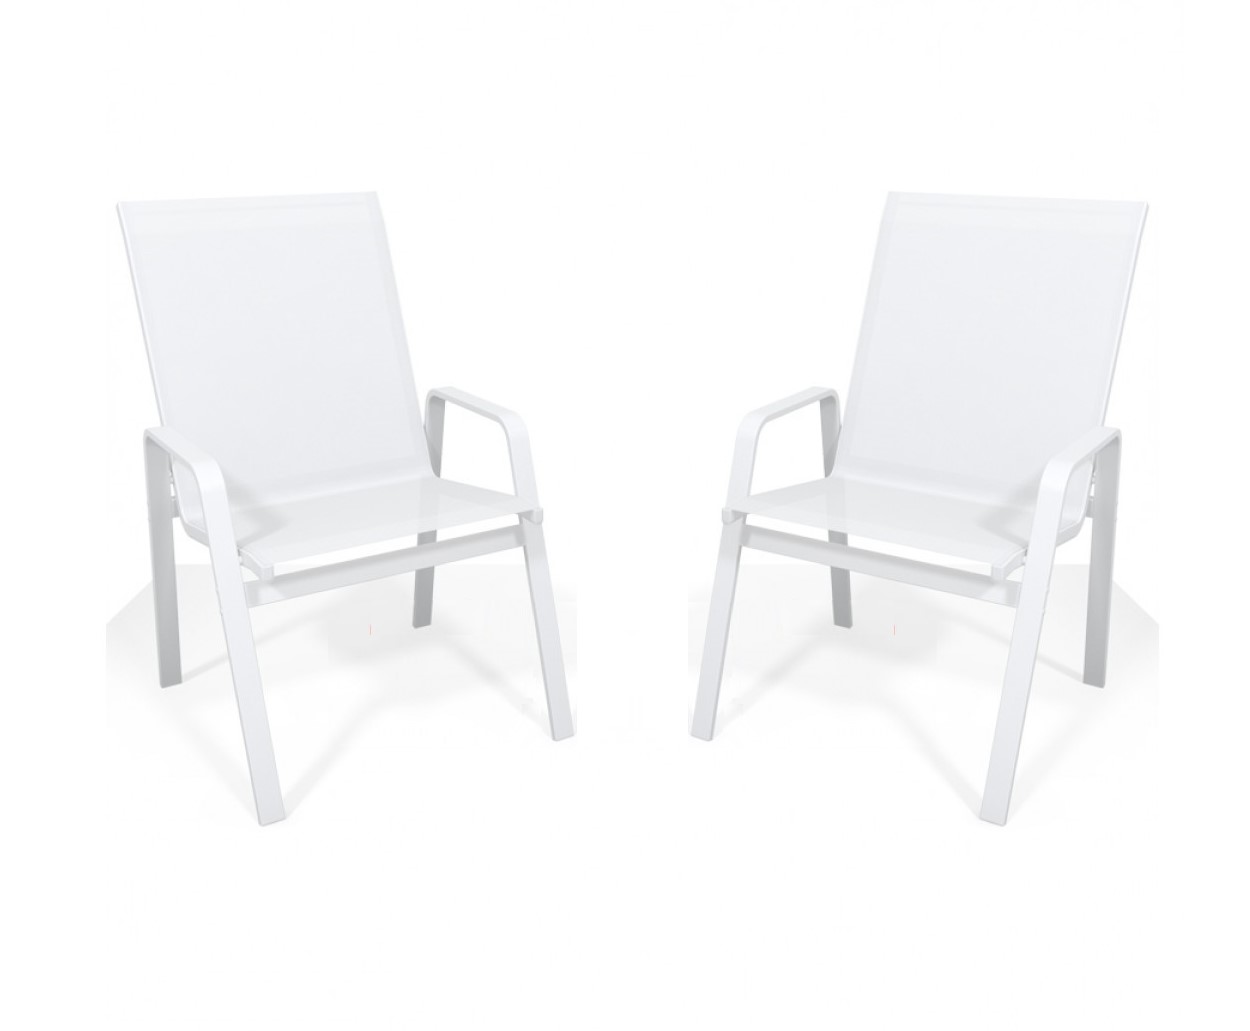 Kit Com 2 Cadeiras Para Piscina Summer - Alumínio Branco, Tela Sling Branca | Empilhável